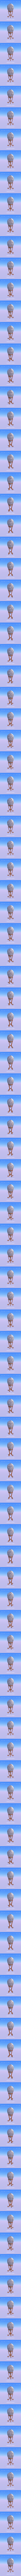 Fabergé Egg: Element